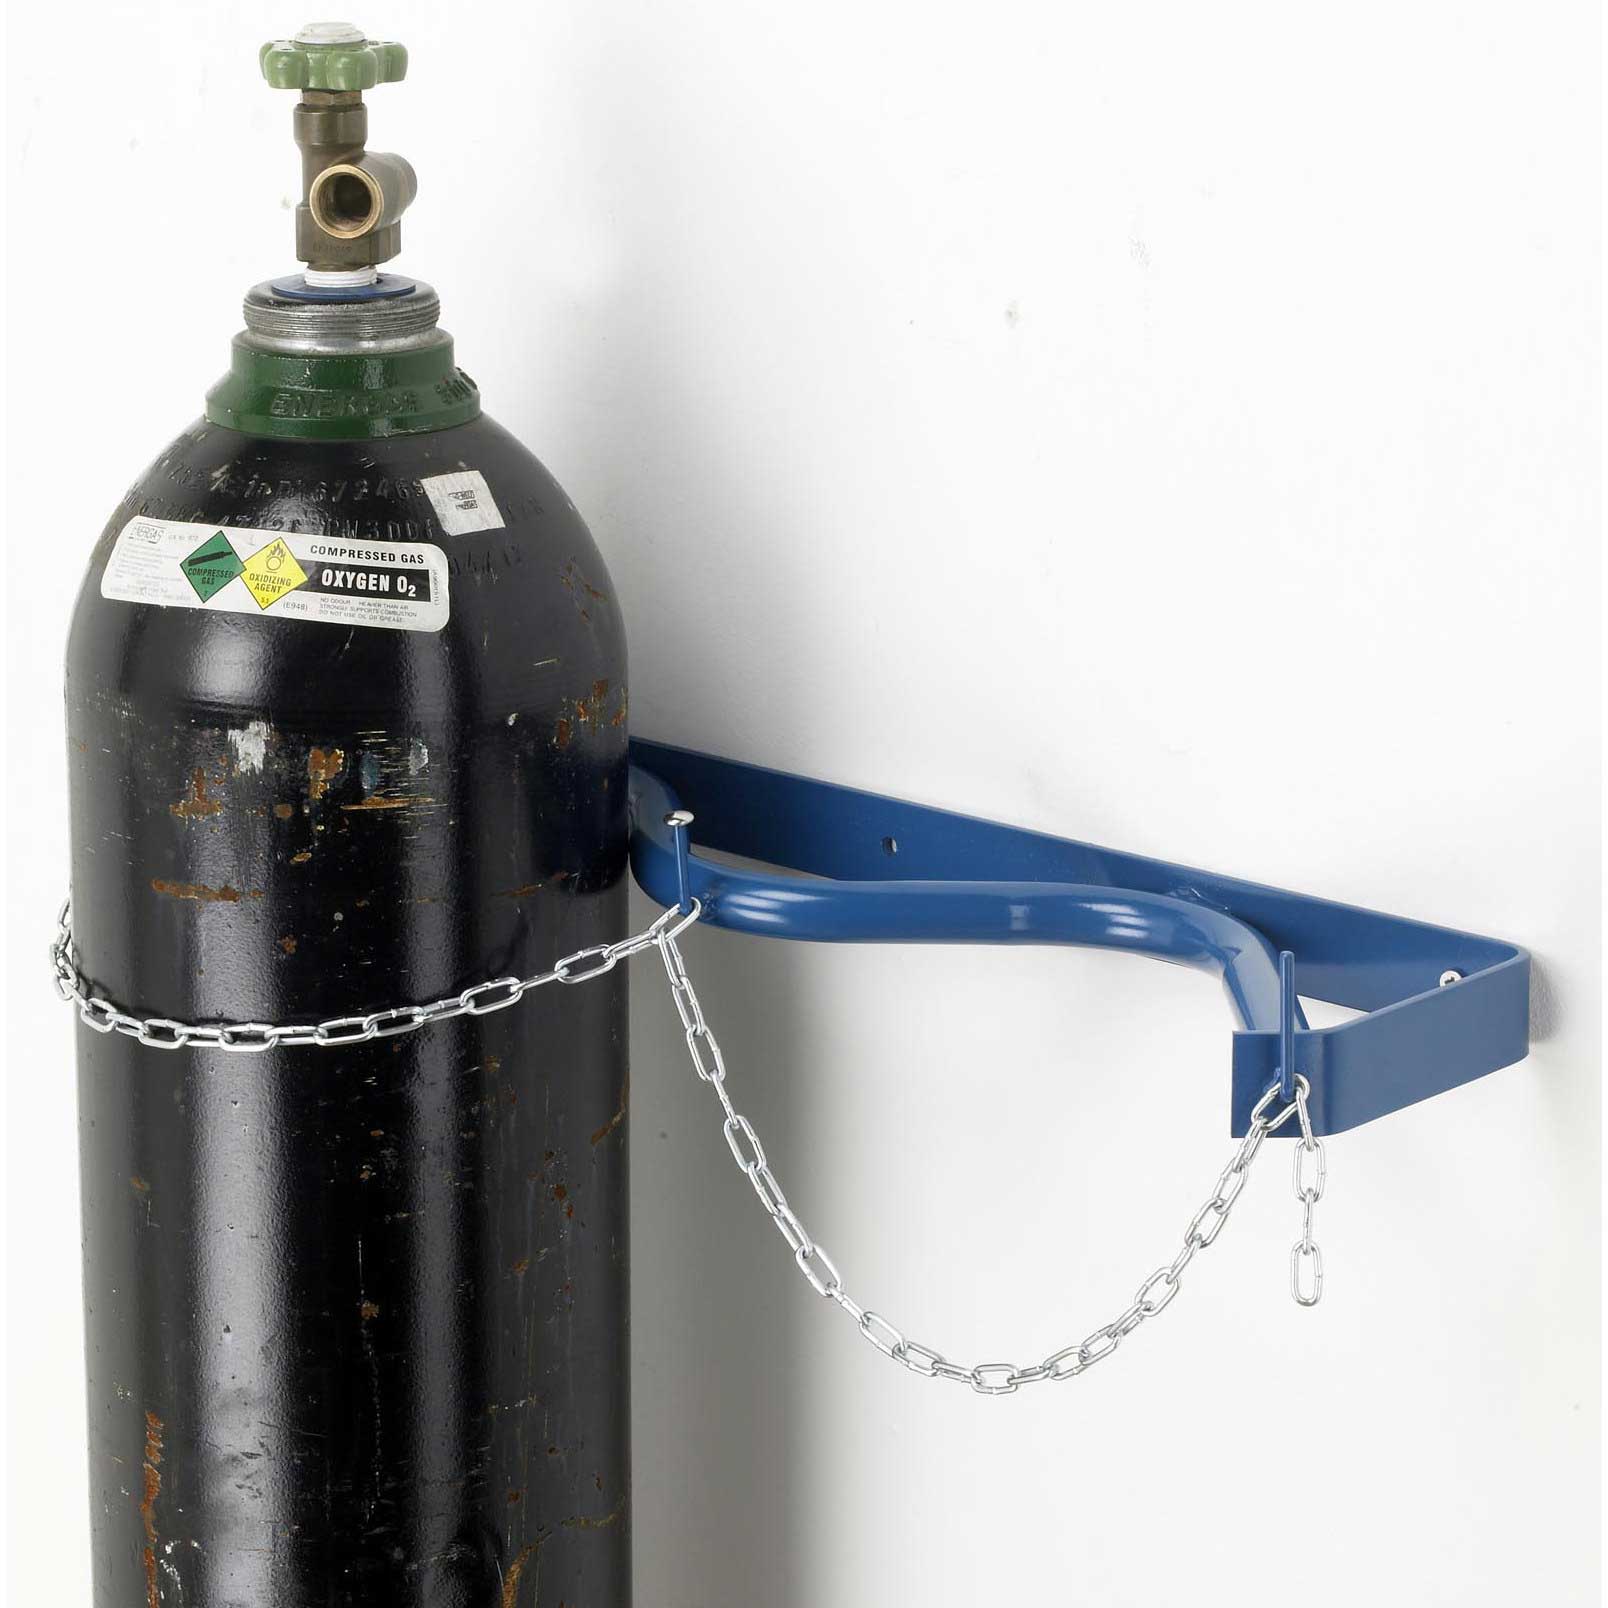 Oxygen Gas Cylinder in bracket